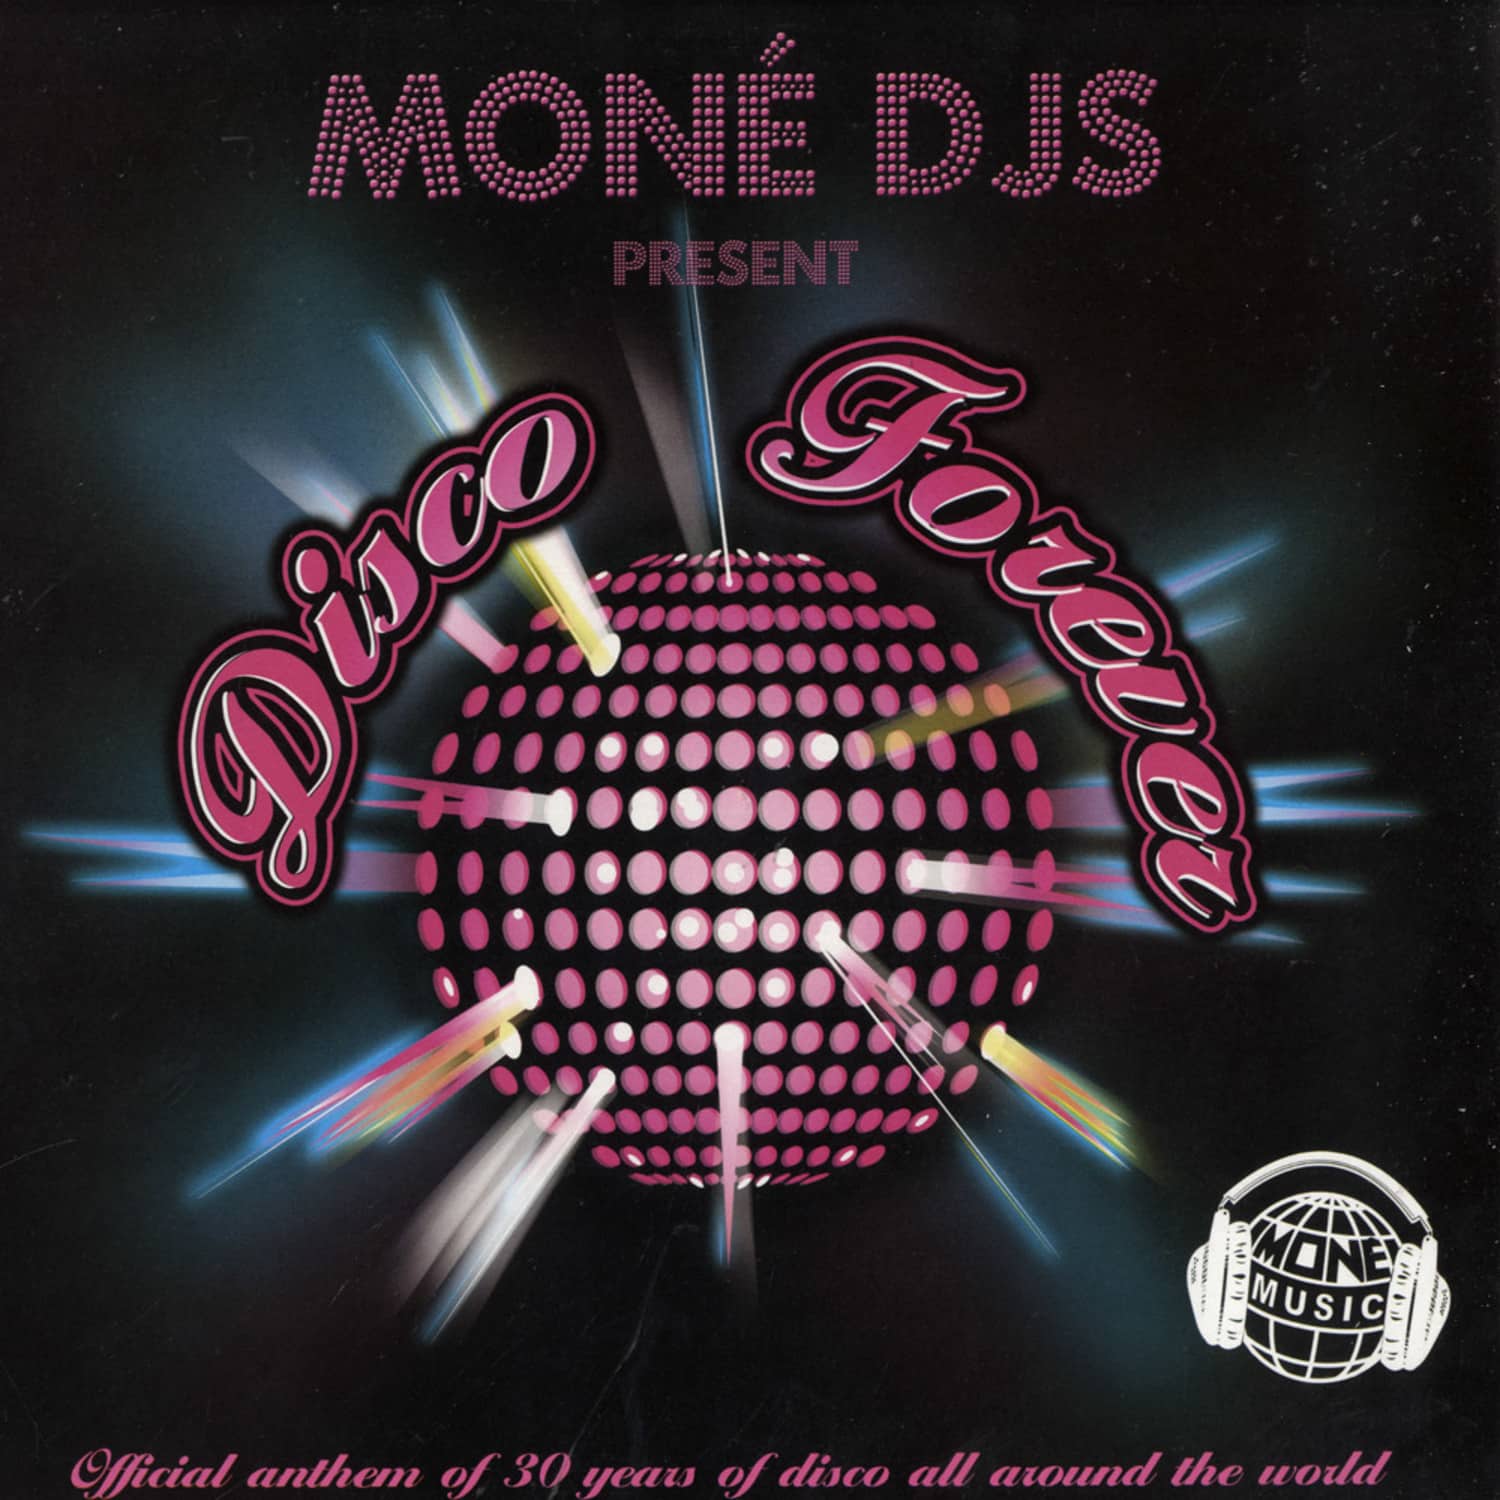 Mone DJs - DISCO FOREVER